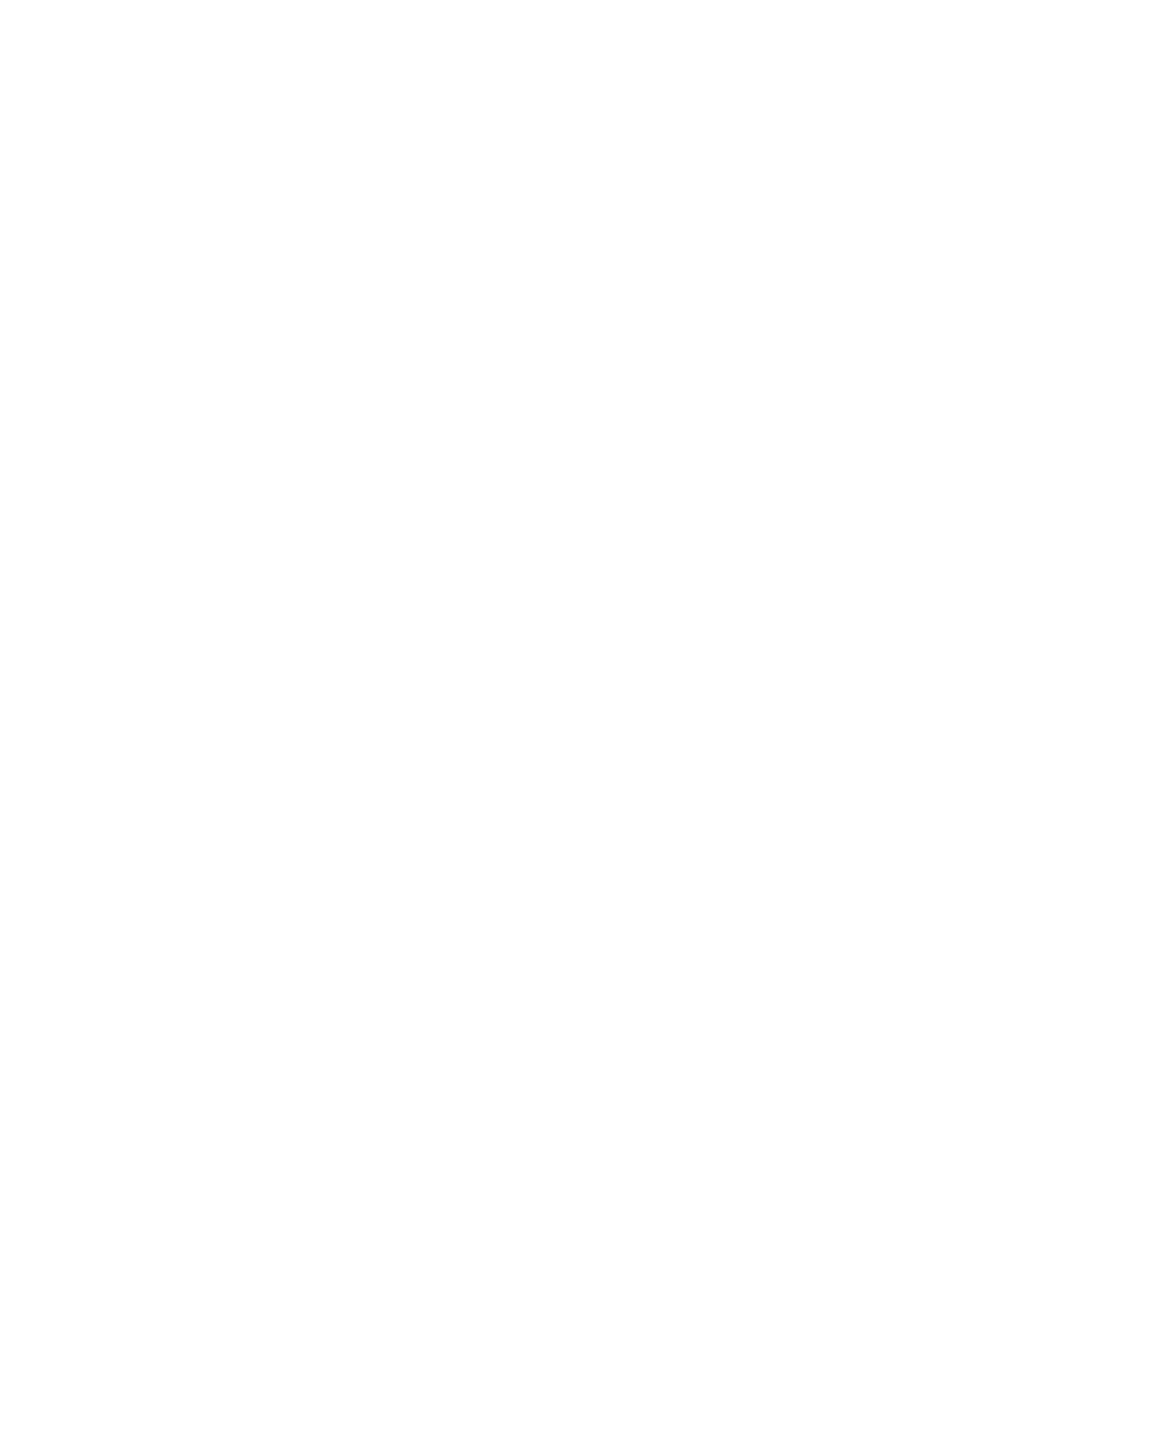 Terveystalo logo for dark backgrounds (transparent PNG)